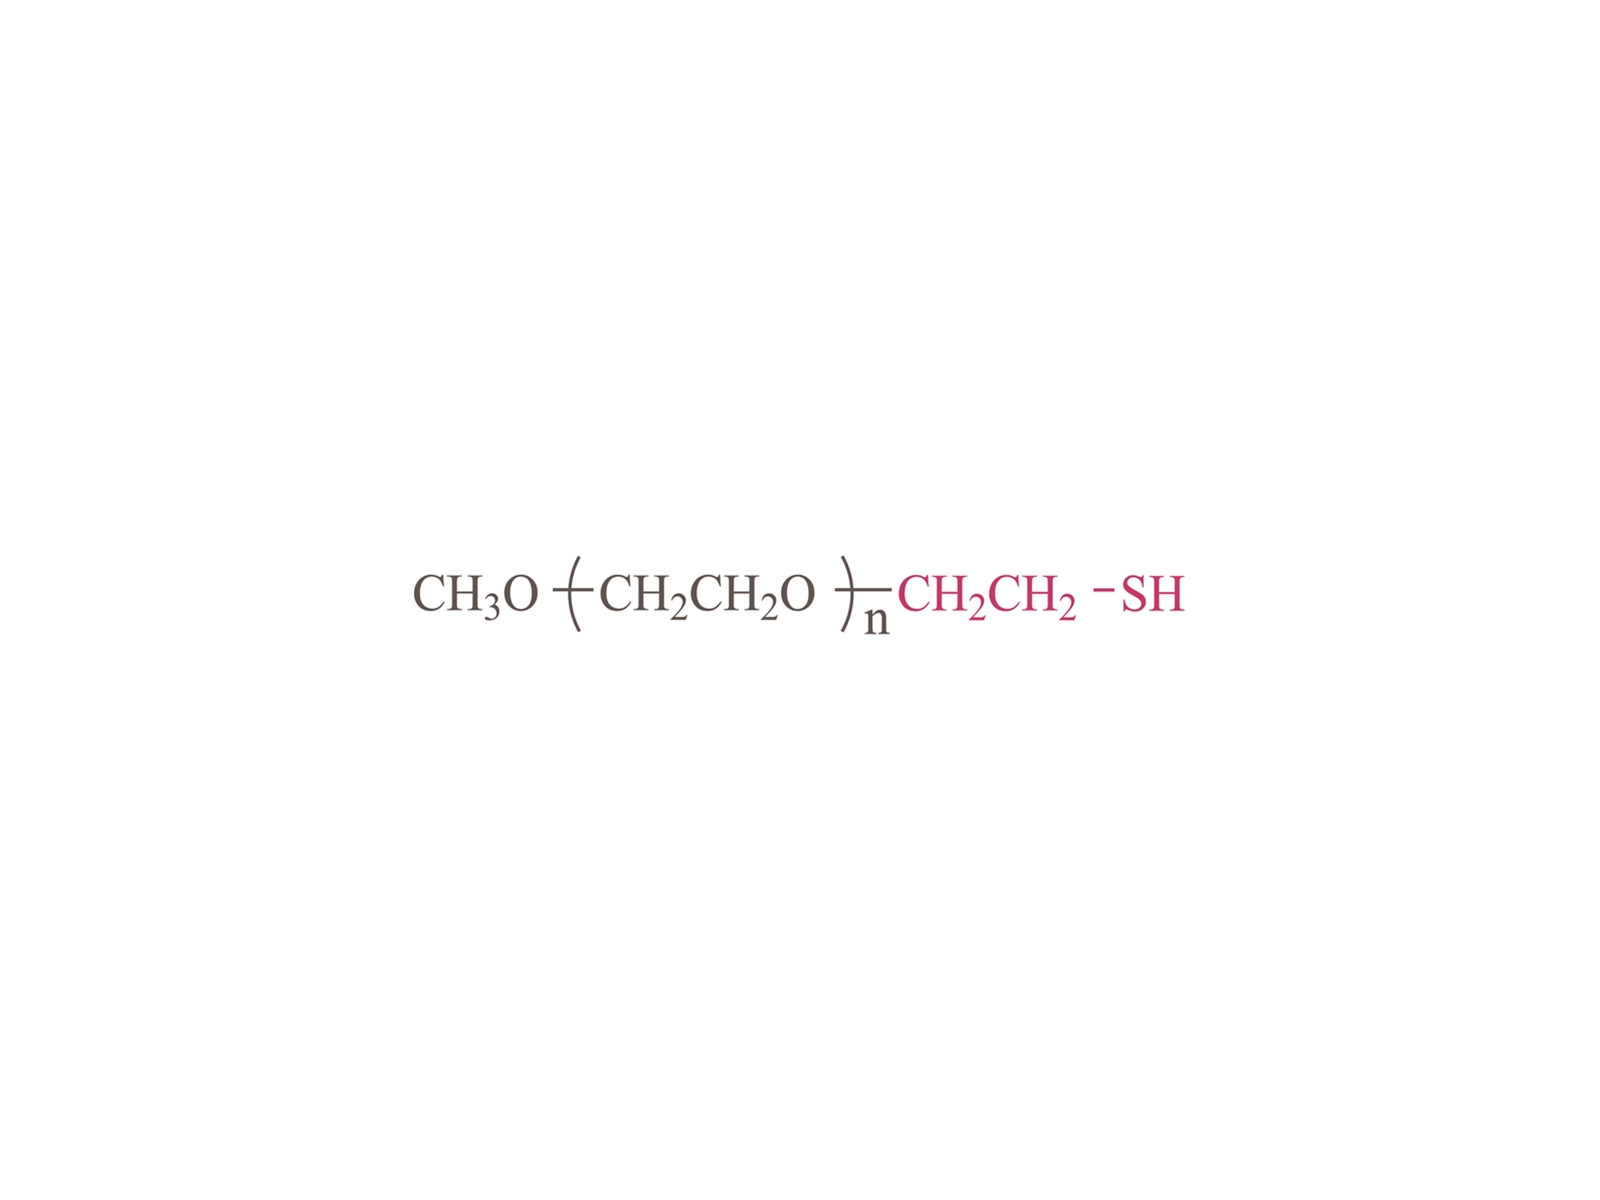 Methoxypoly (Ethylenglykol) Thiol [MPEG-SH] CAS: 31521-83-2,52190-55-3,524030-00-0,441771-60-4.651042-82-9.651042-83-0,651042-84-1.651042-85-2.